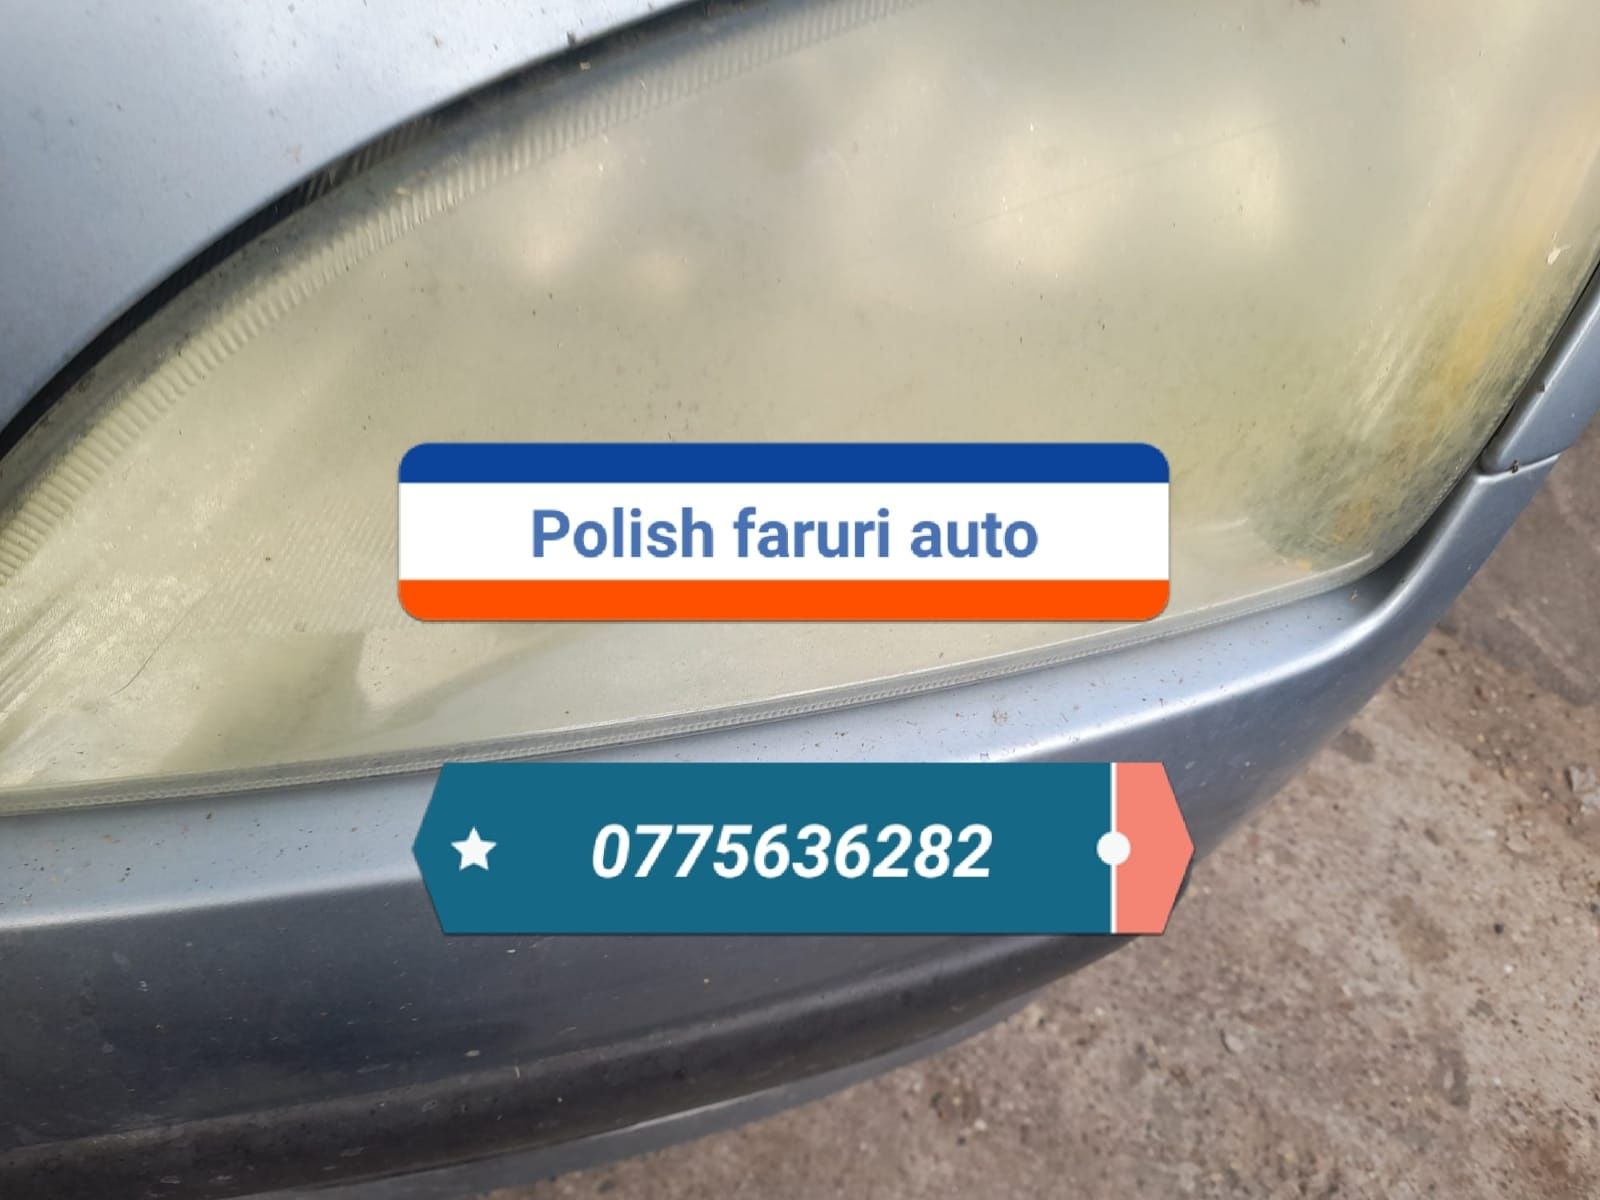 Polish faruri profesional